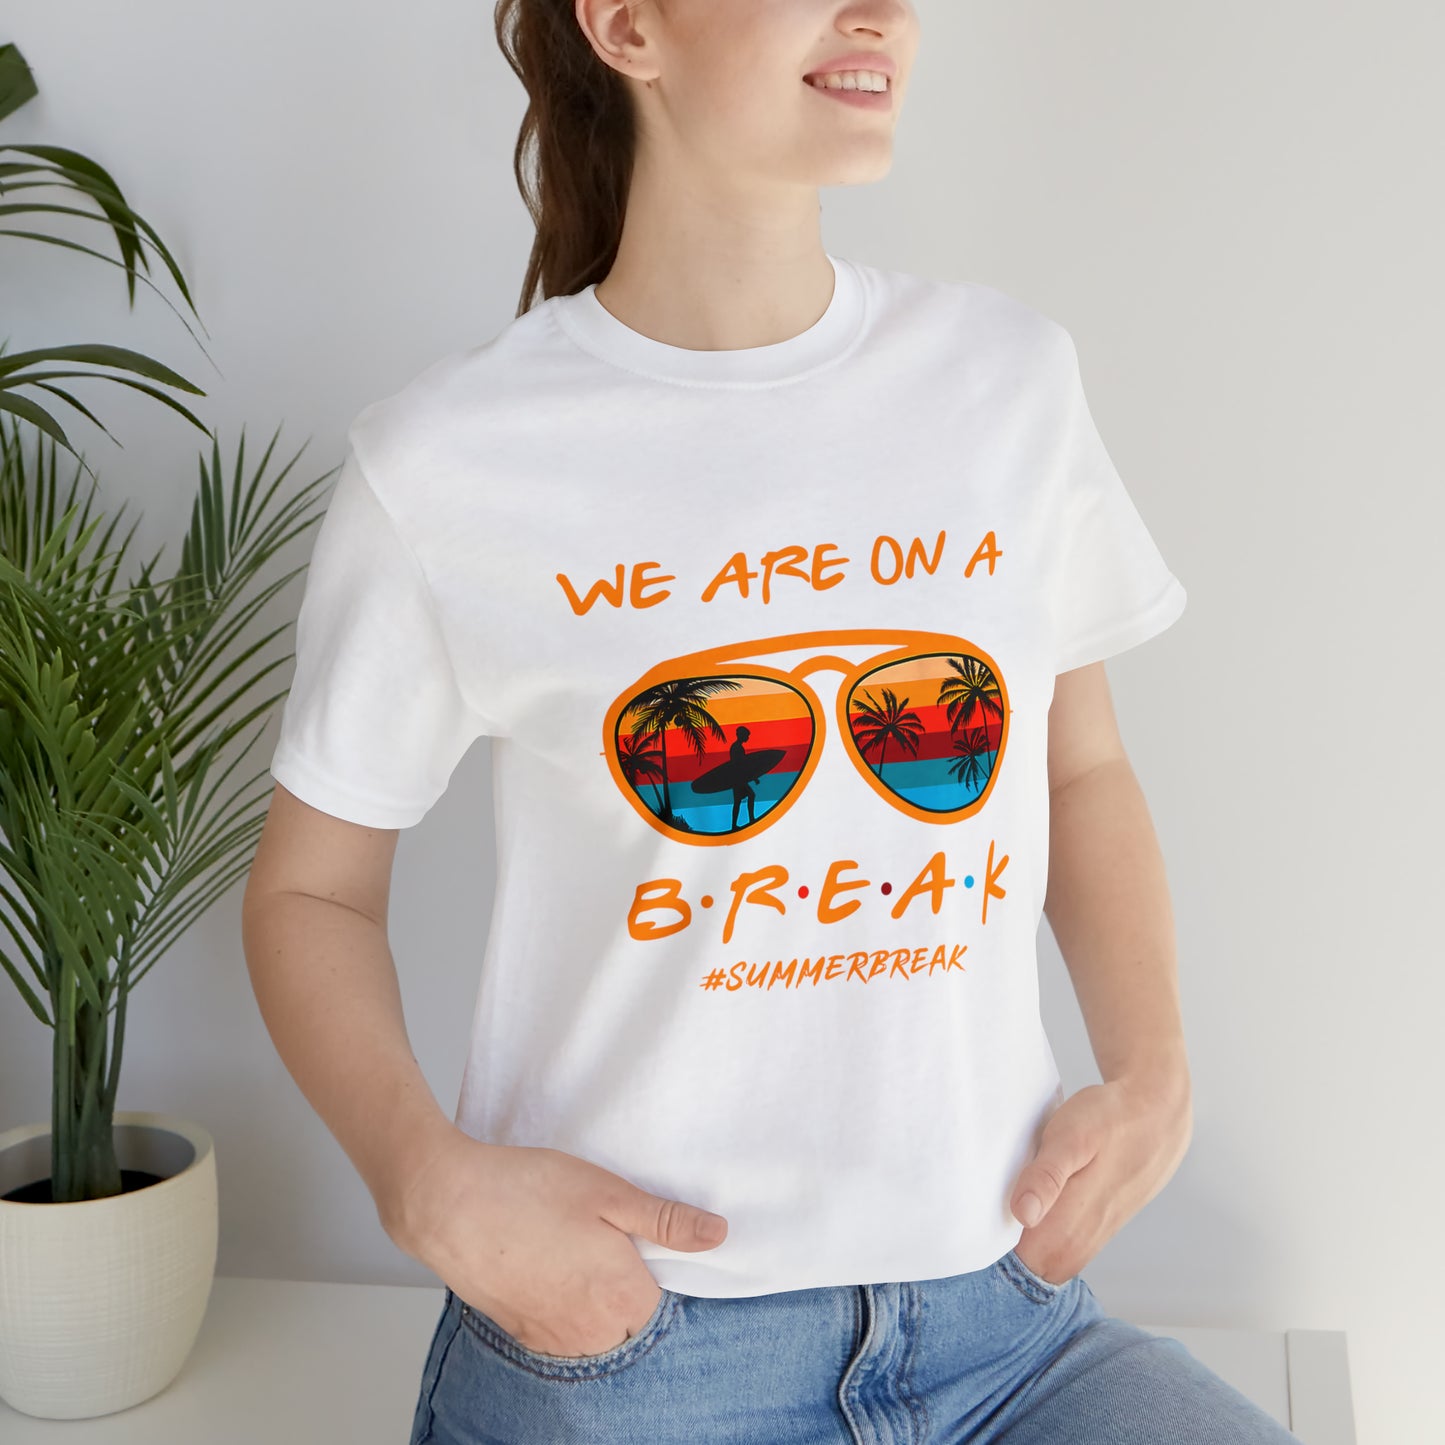 "We Are On a Break" #SummerBreak Tee